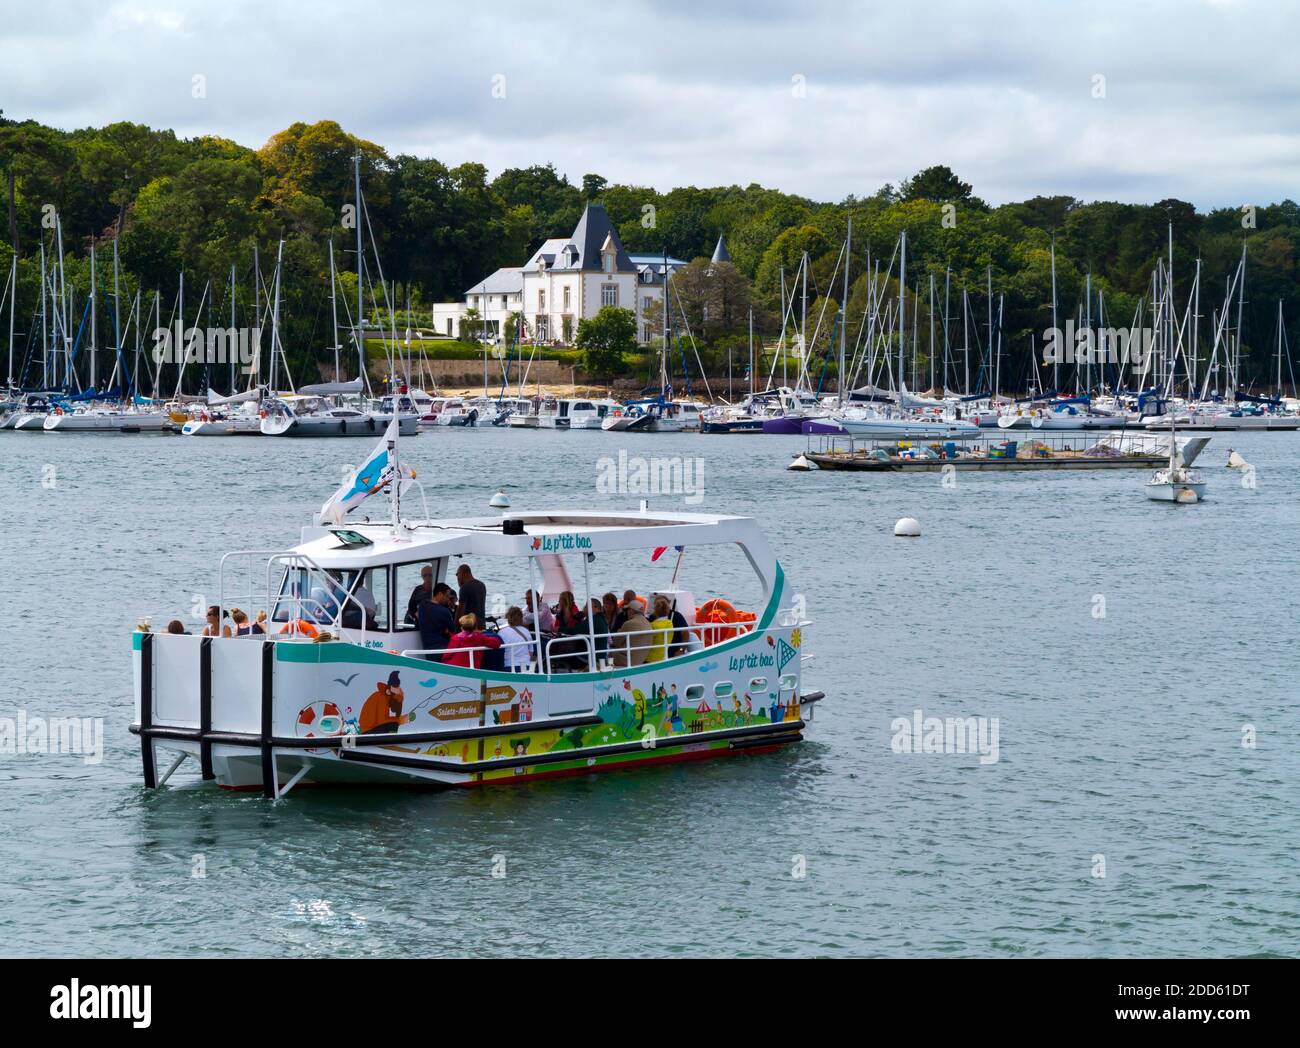 Vue d'été de Benodet ville côtière sur l'estuaire de l'Odet dans le Finistère Bretagne nord-ouest de la France avec bateau touristique en premier plan. Banque D'Images